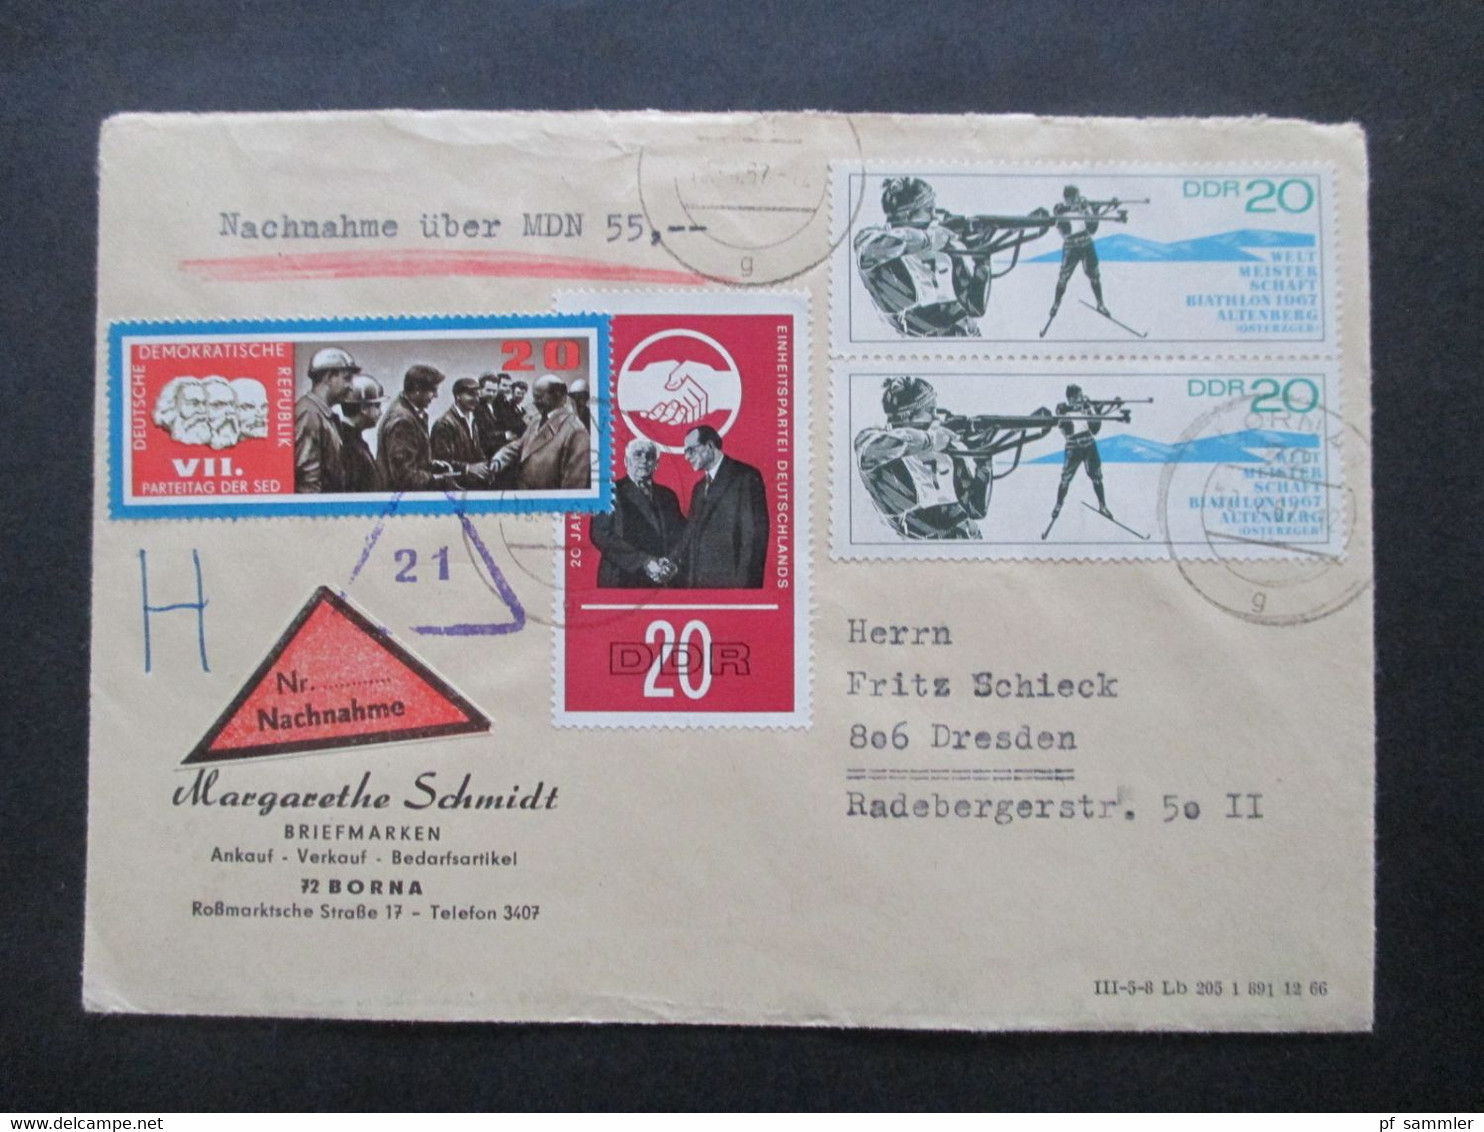 DDR 1960 / 70er Jahre insgesamt 14 Belege / Nachnahme / Einschreiben! Schöne Frankaturen / auch Einheiten!